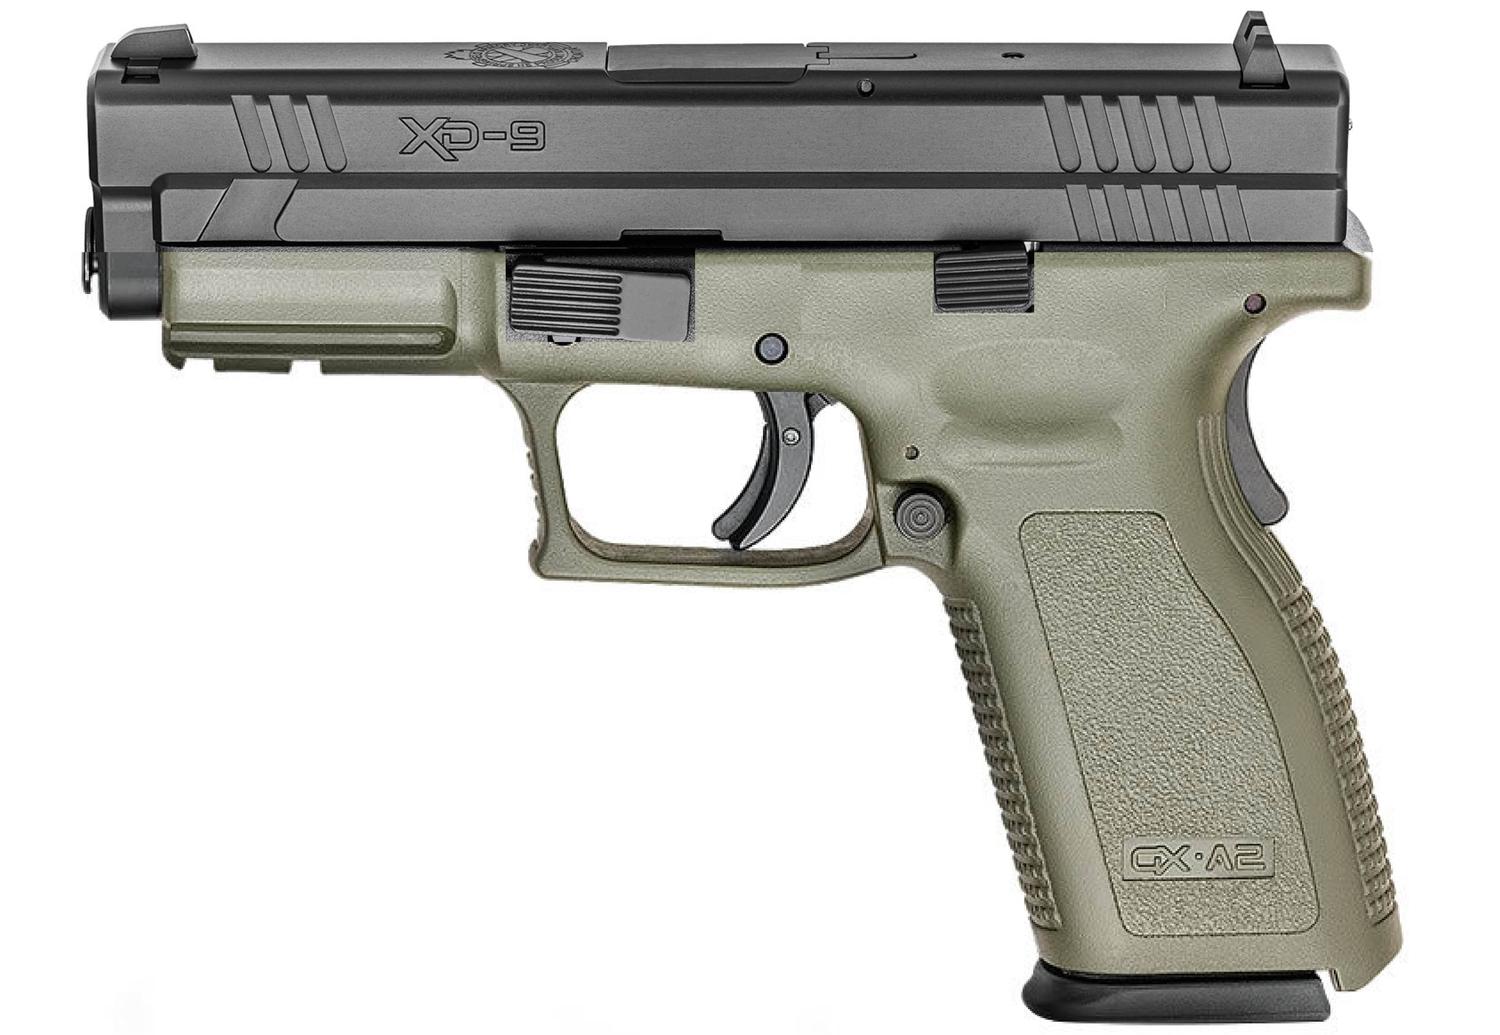  Xd- 9 9mm 4in - Od Green